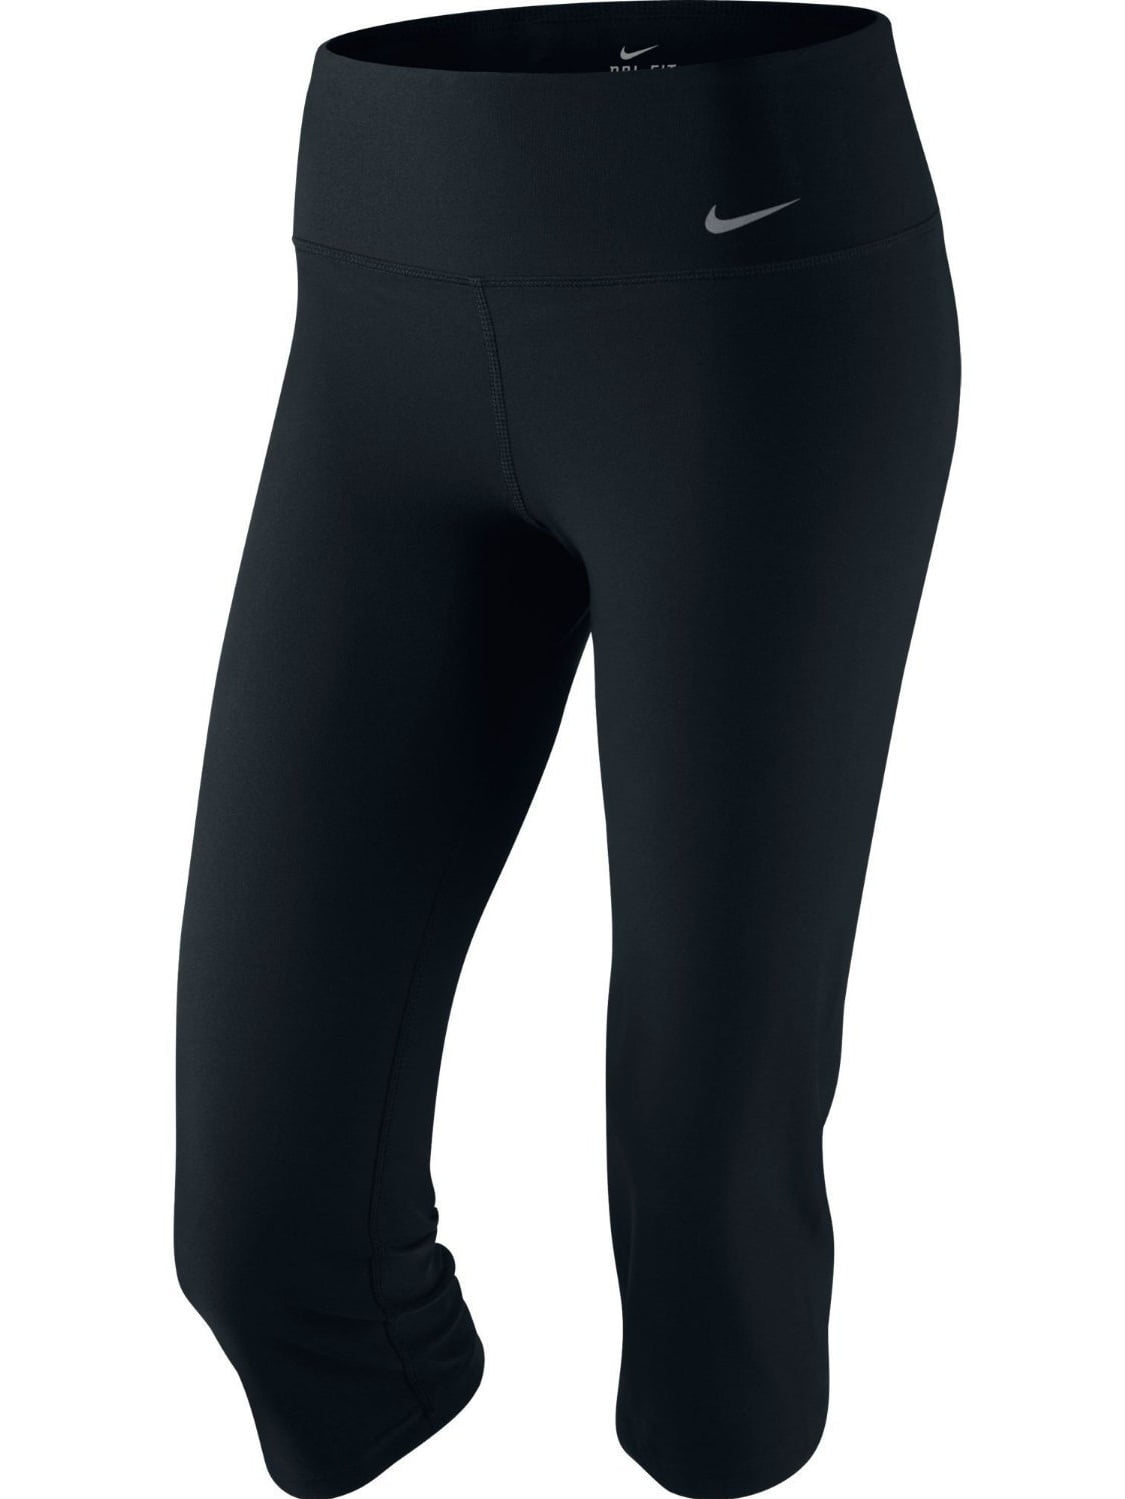 het dossier Schep handtekening Nike Women's Dri-Fit Slim Fit Training Capris-Black - Walmart.com